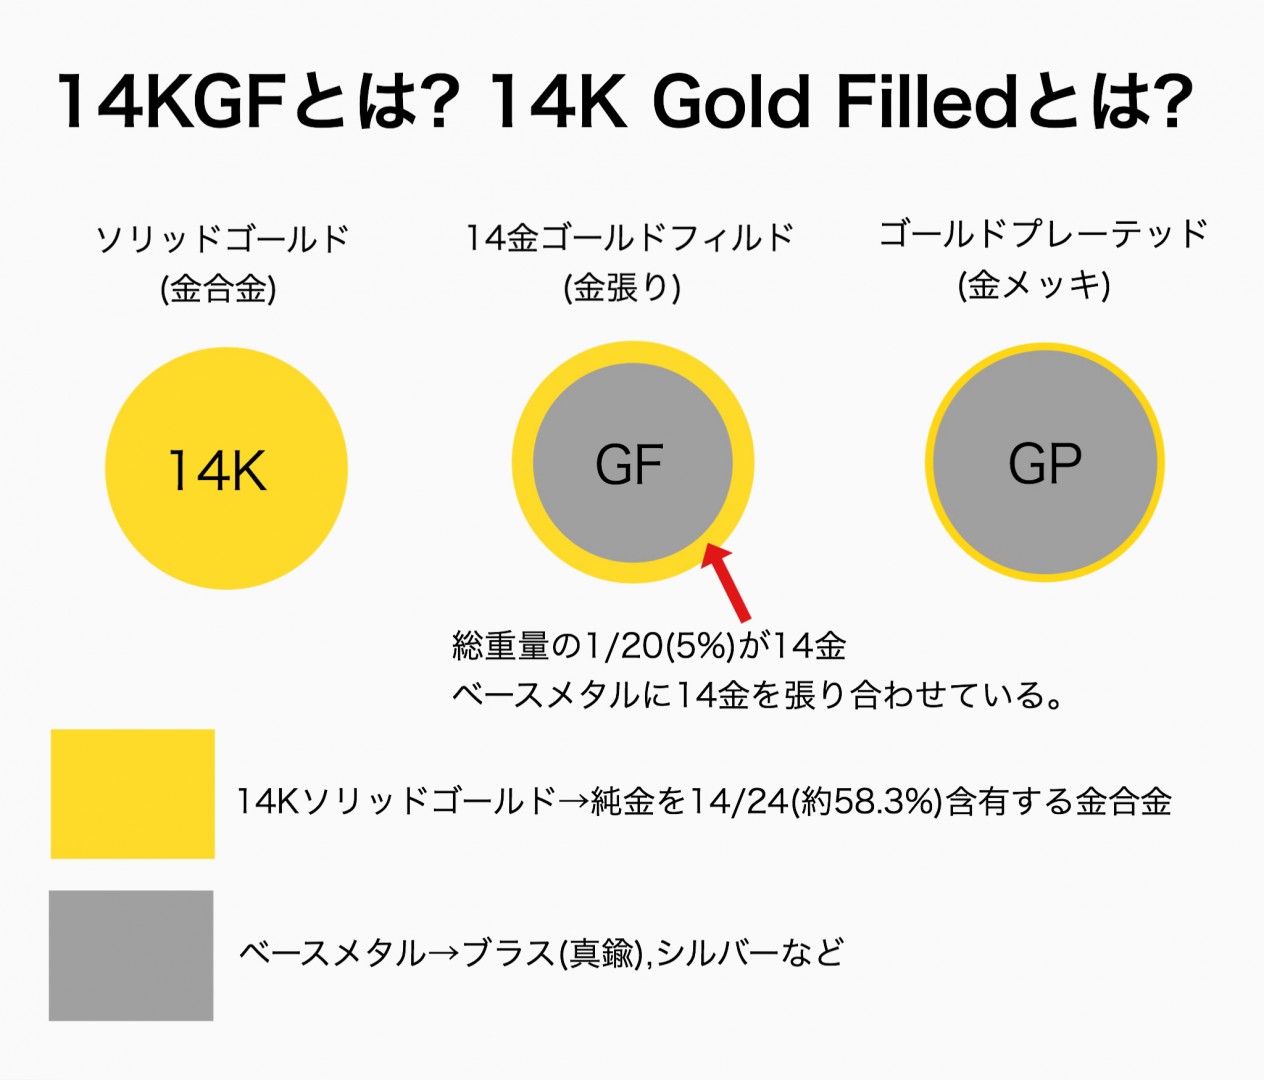 14KGF( K14GF)とは? ゴールドフィルドについて